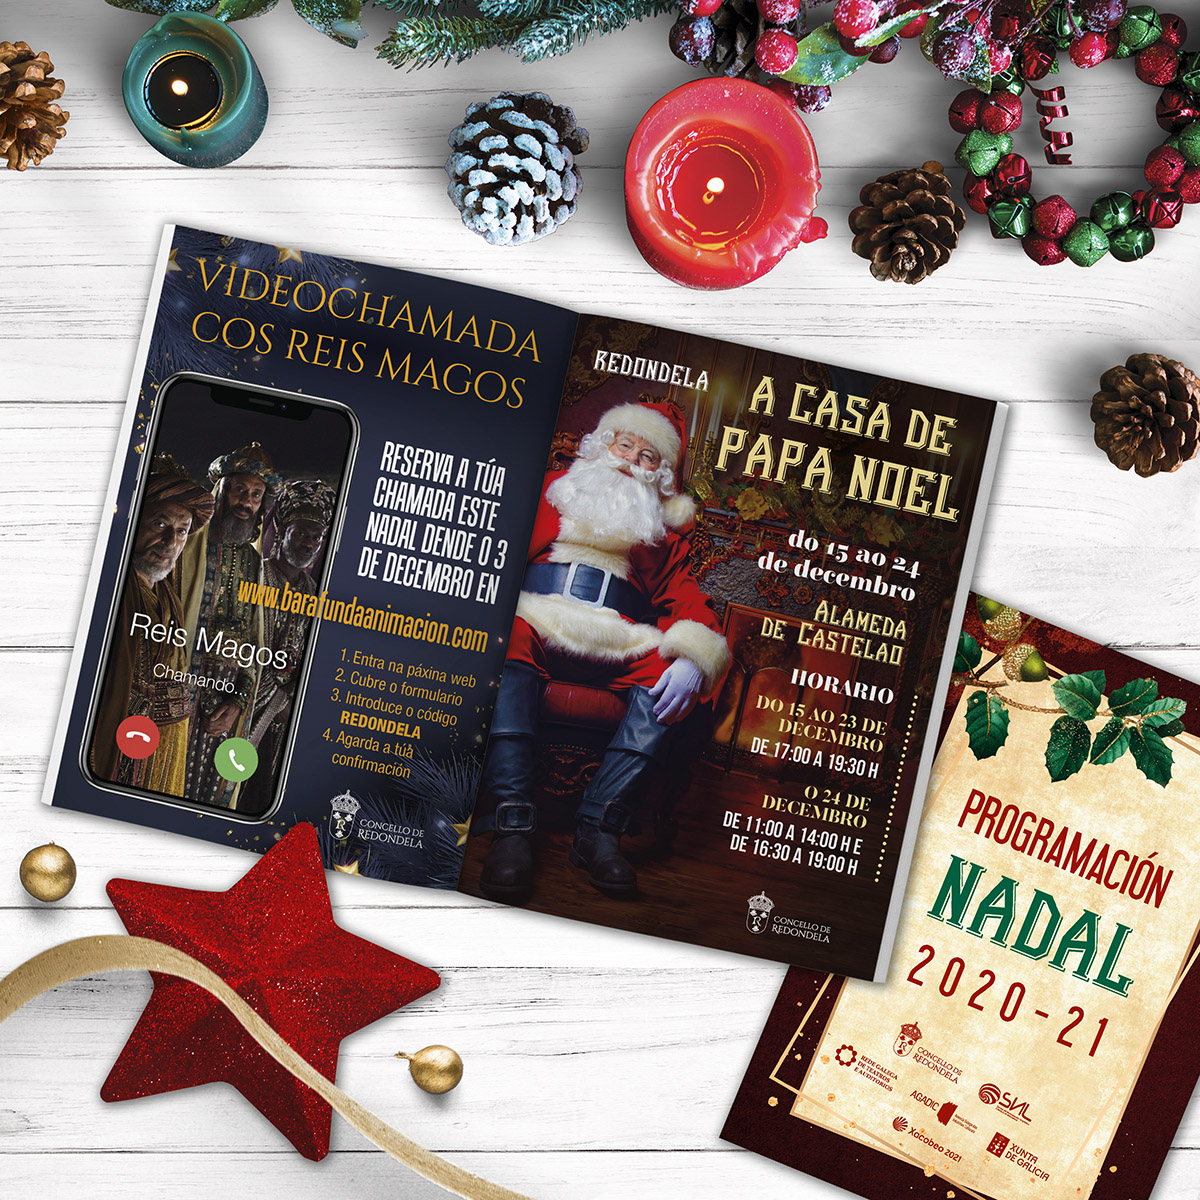 Campaña Ciclo Cultural Nadal Redondela Pontevedra Diseño Publicidad Marketing Evento cultura